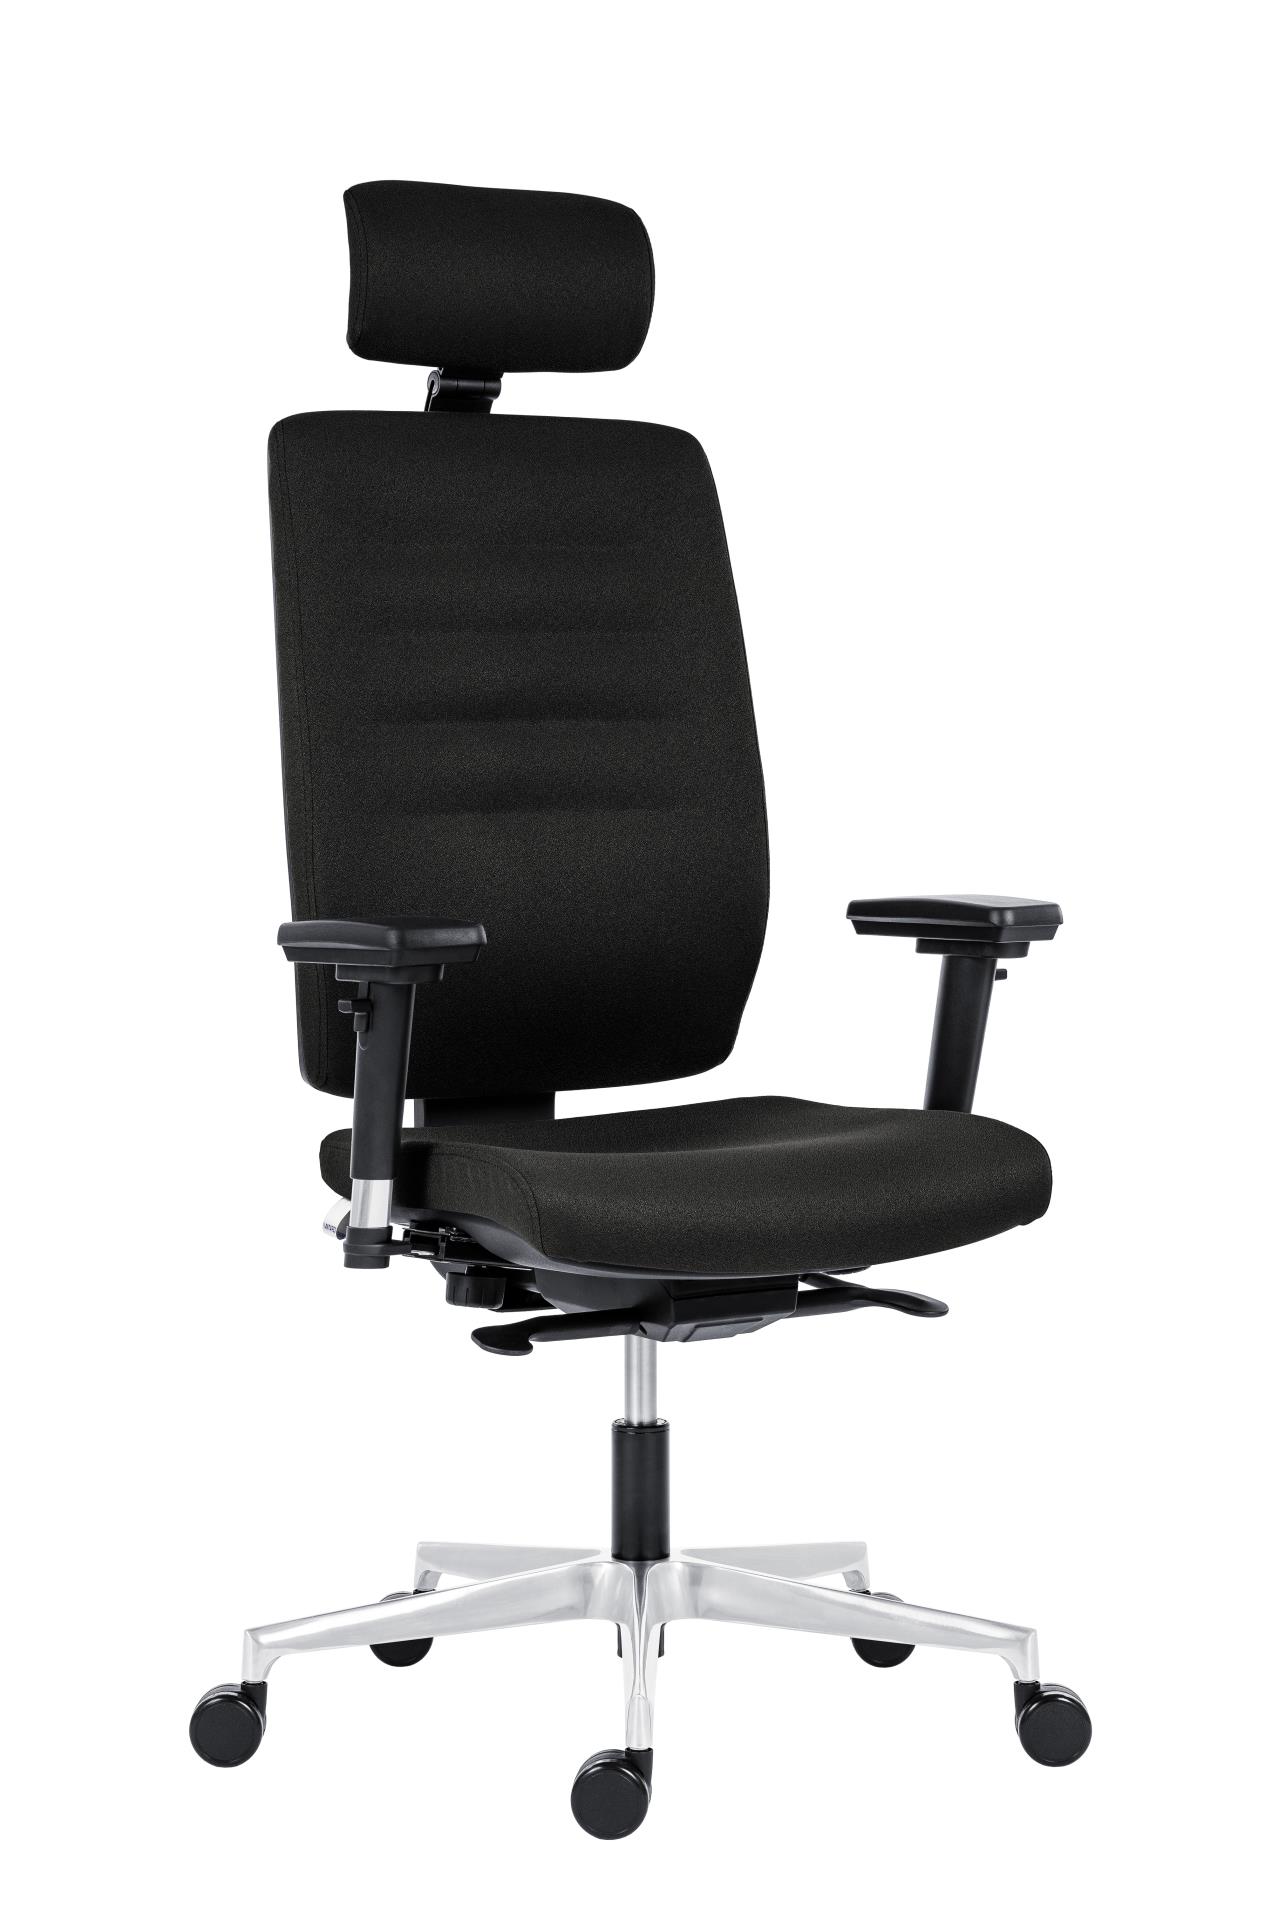 Antares Kancelářská židle Eclipse - s podhlavníkem, synchronní, černá